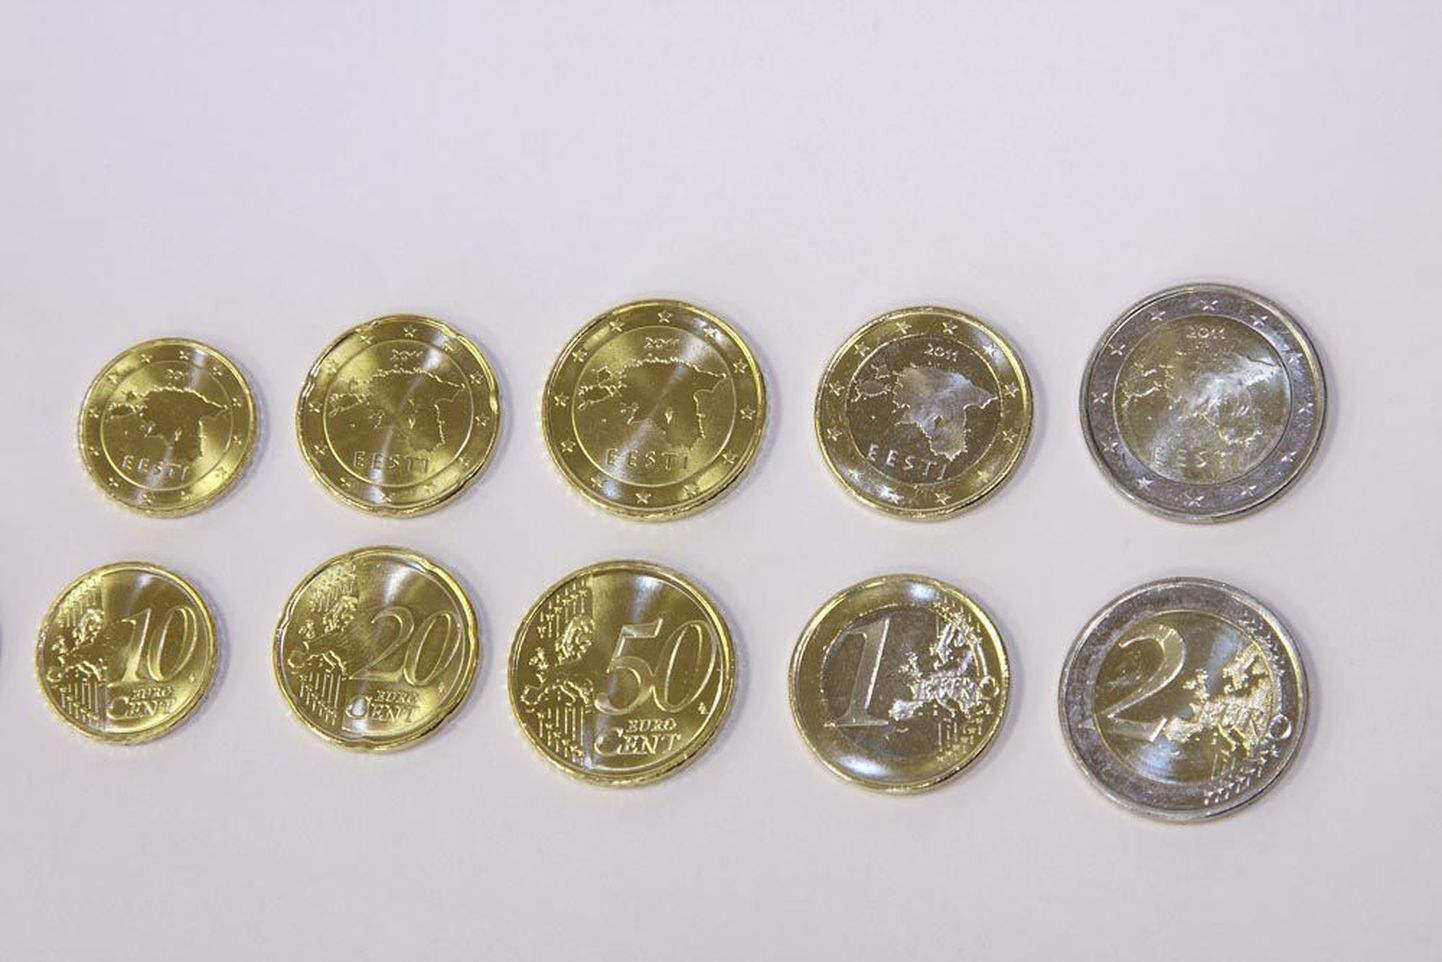 Eesti euromündid. Ülemisel real näeme müntide tagakülge, alumisel esikülge, mis on kõikidel maadel ühesugune.